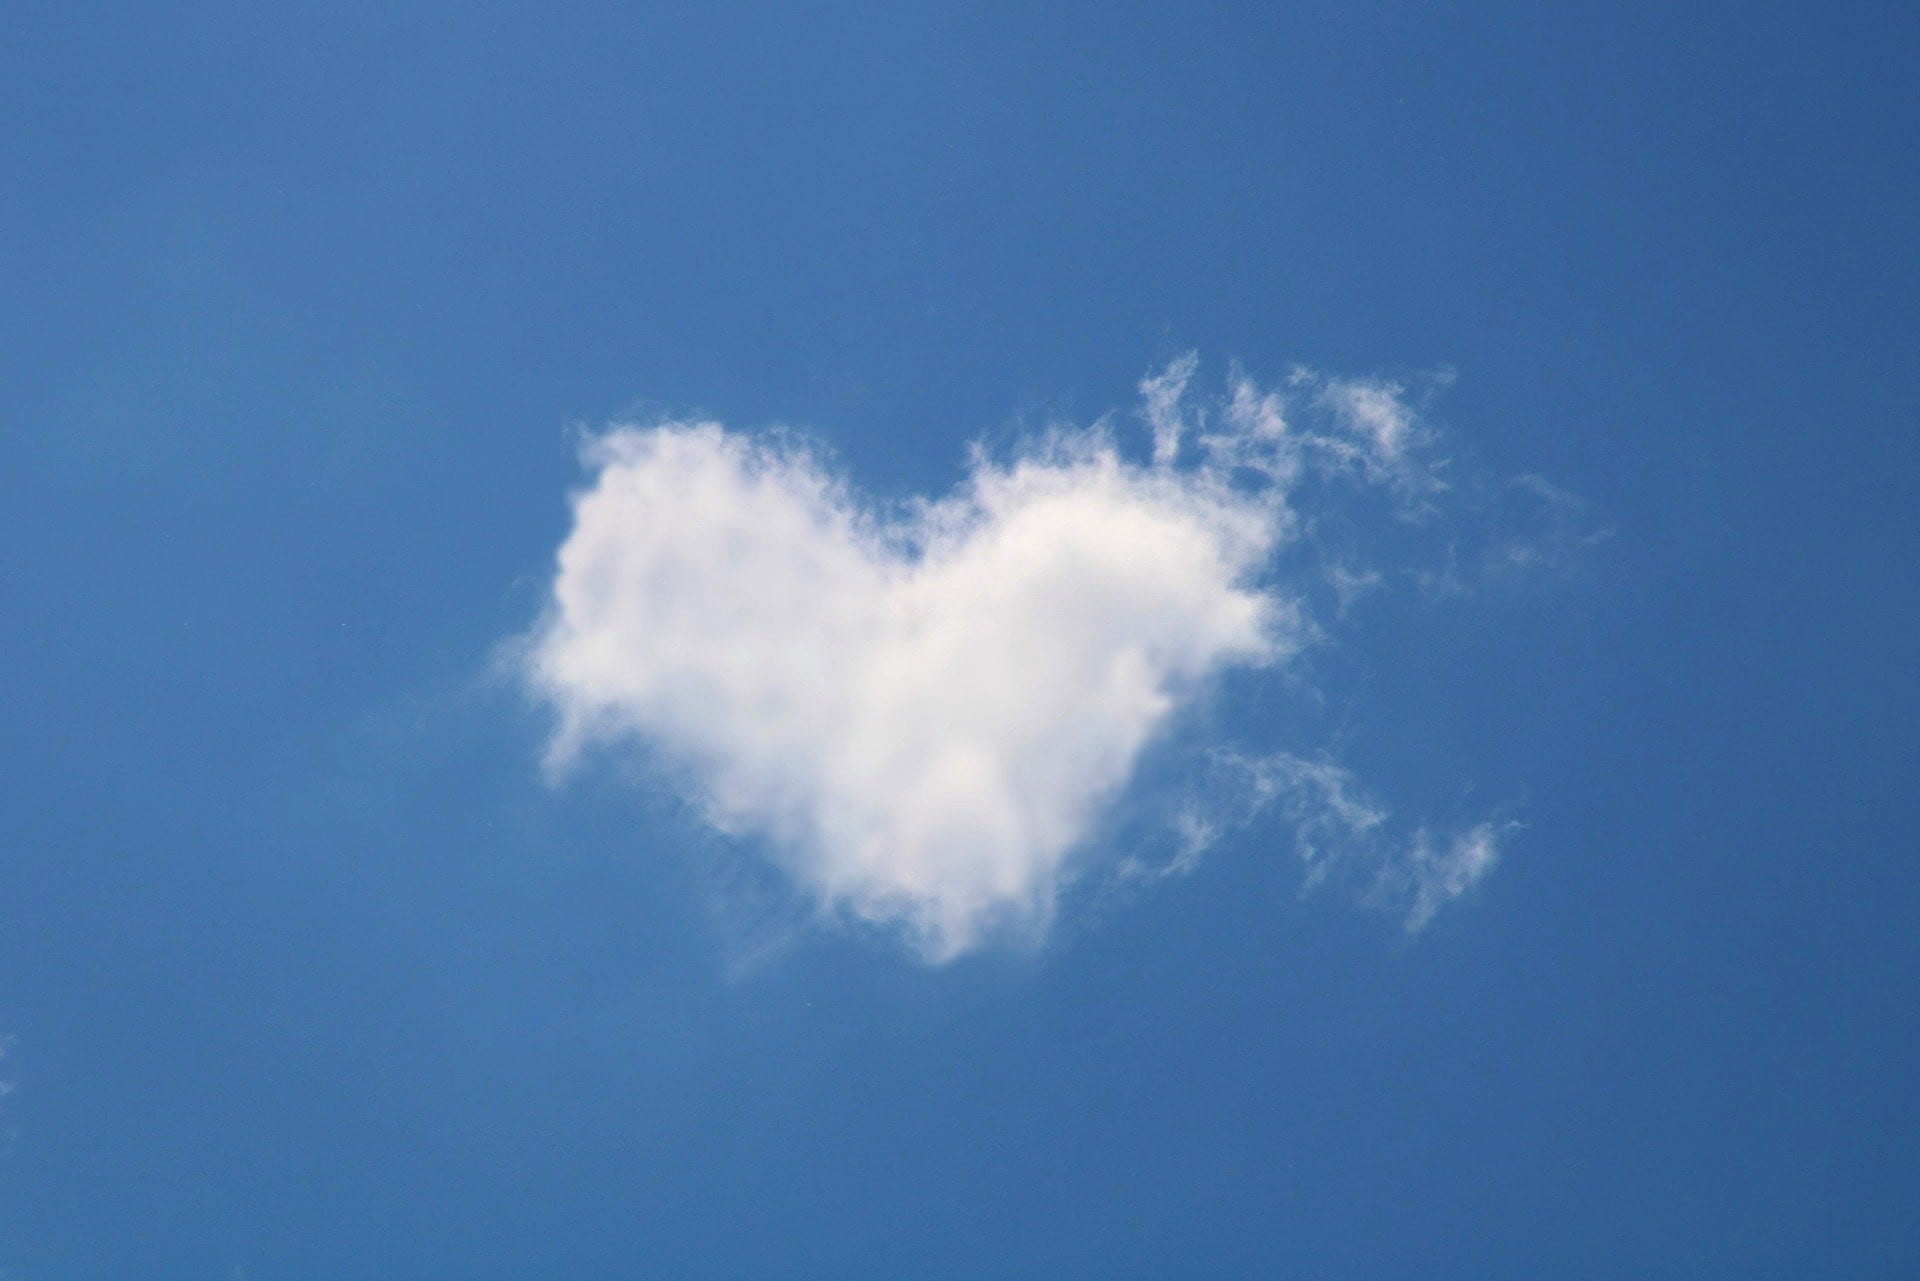 cloud shaped like a heart